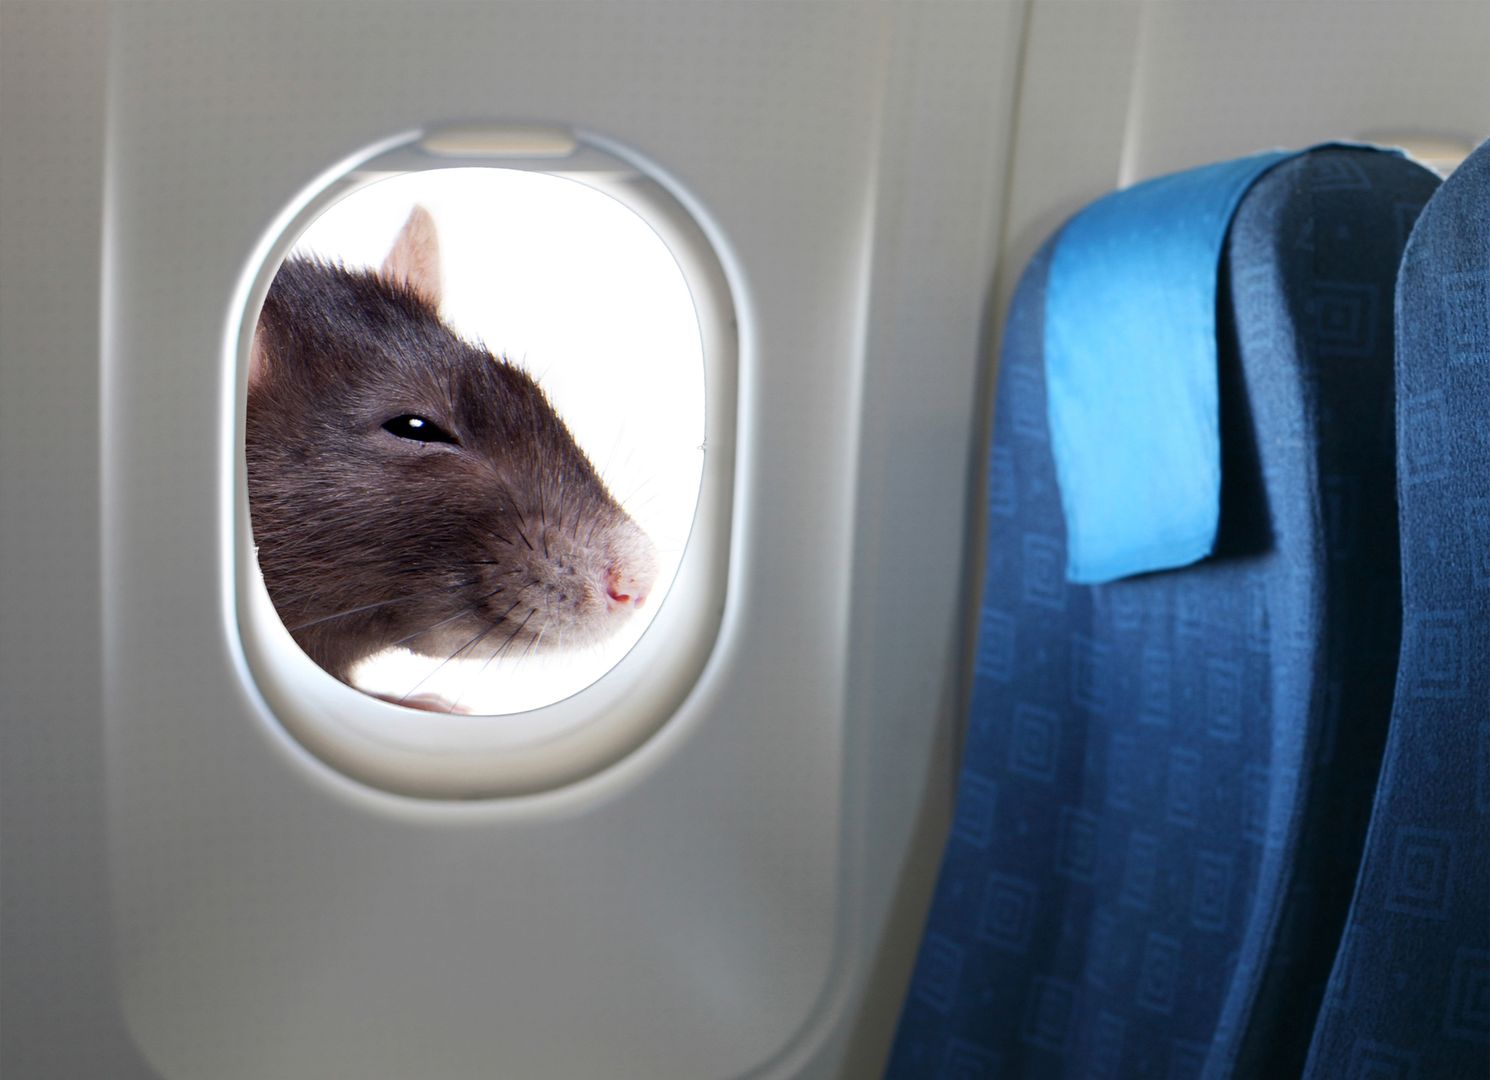 Pasażer zobaczył szczura, więc zawrócono samolot